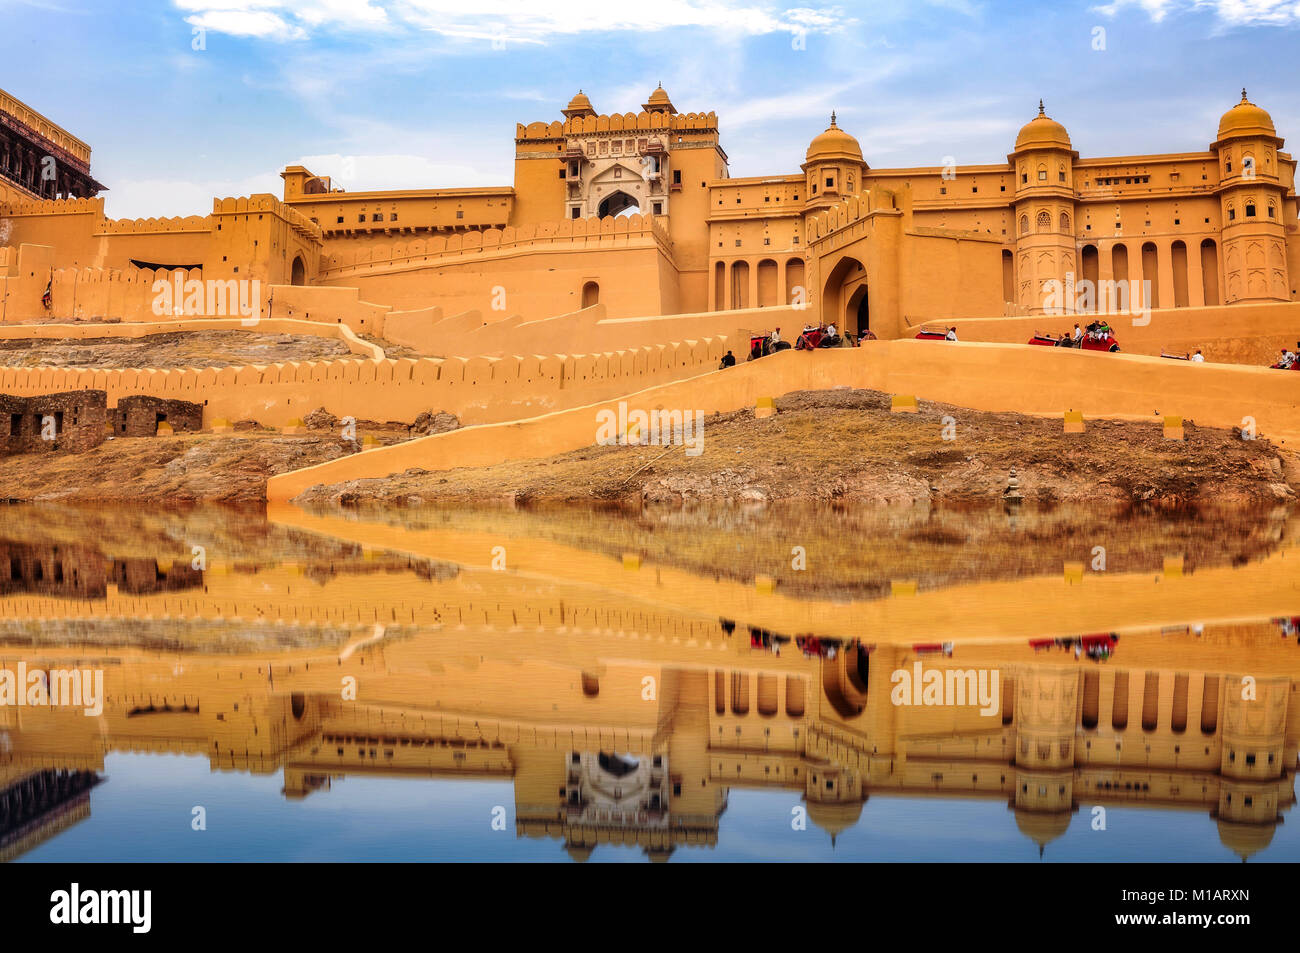 Amer Fort Jaipur Rajasthan Indien mit See Wasser Reflexion. Fort Amber in Jaipur ist ein UNESCO Weltkulturerbe Stockfoto